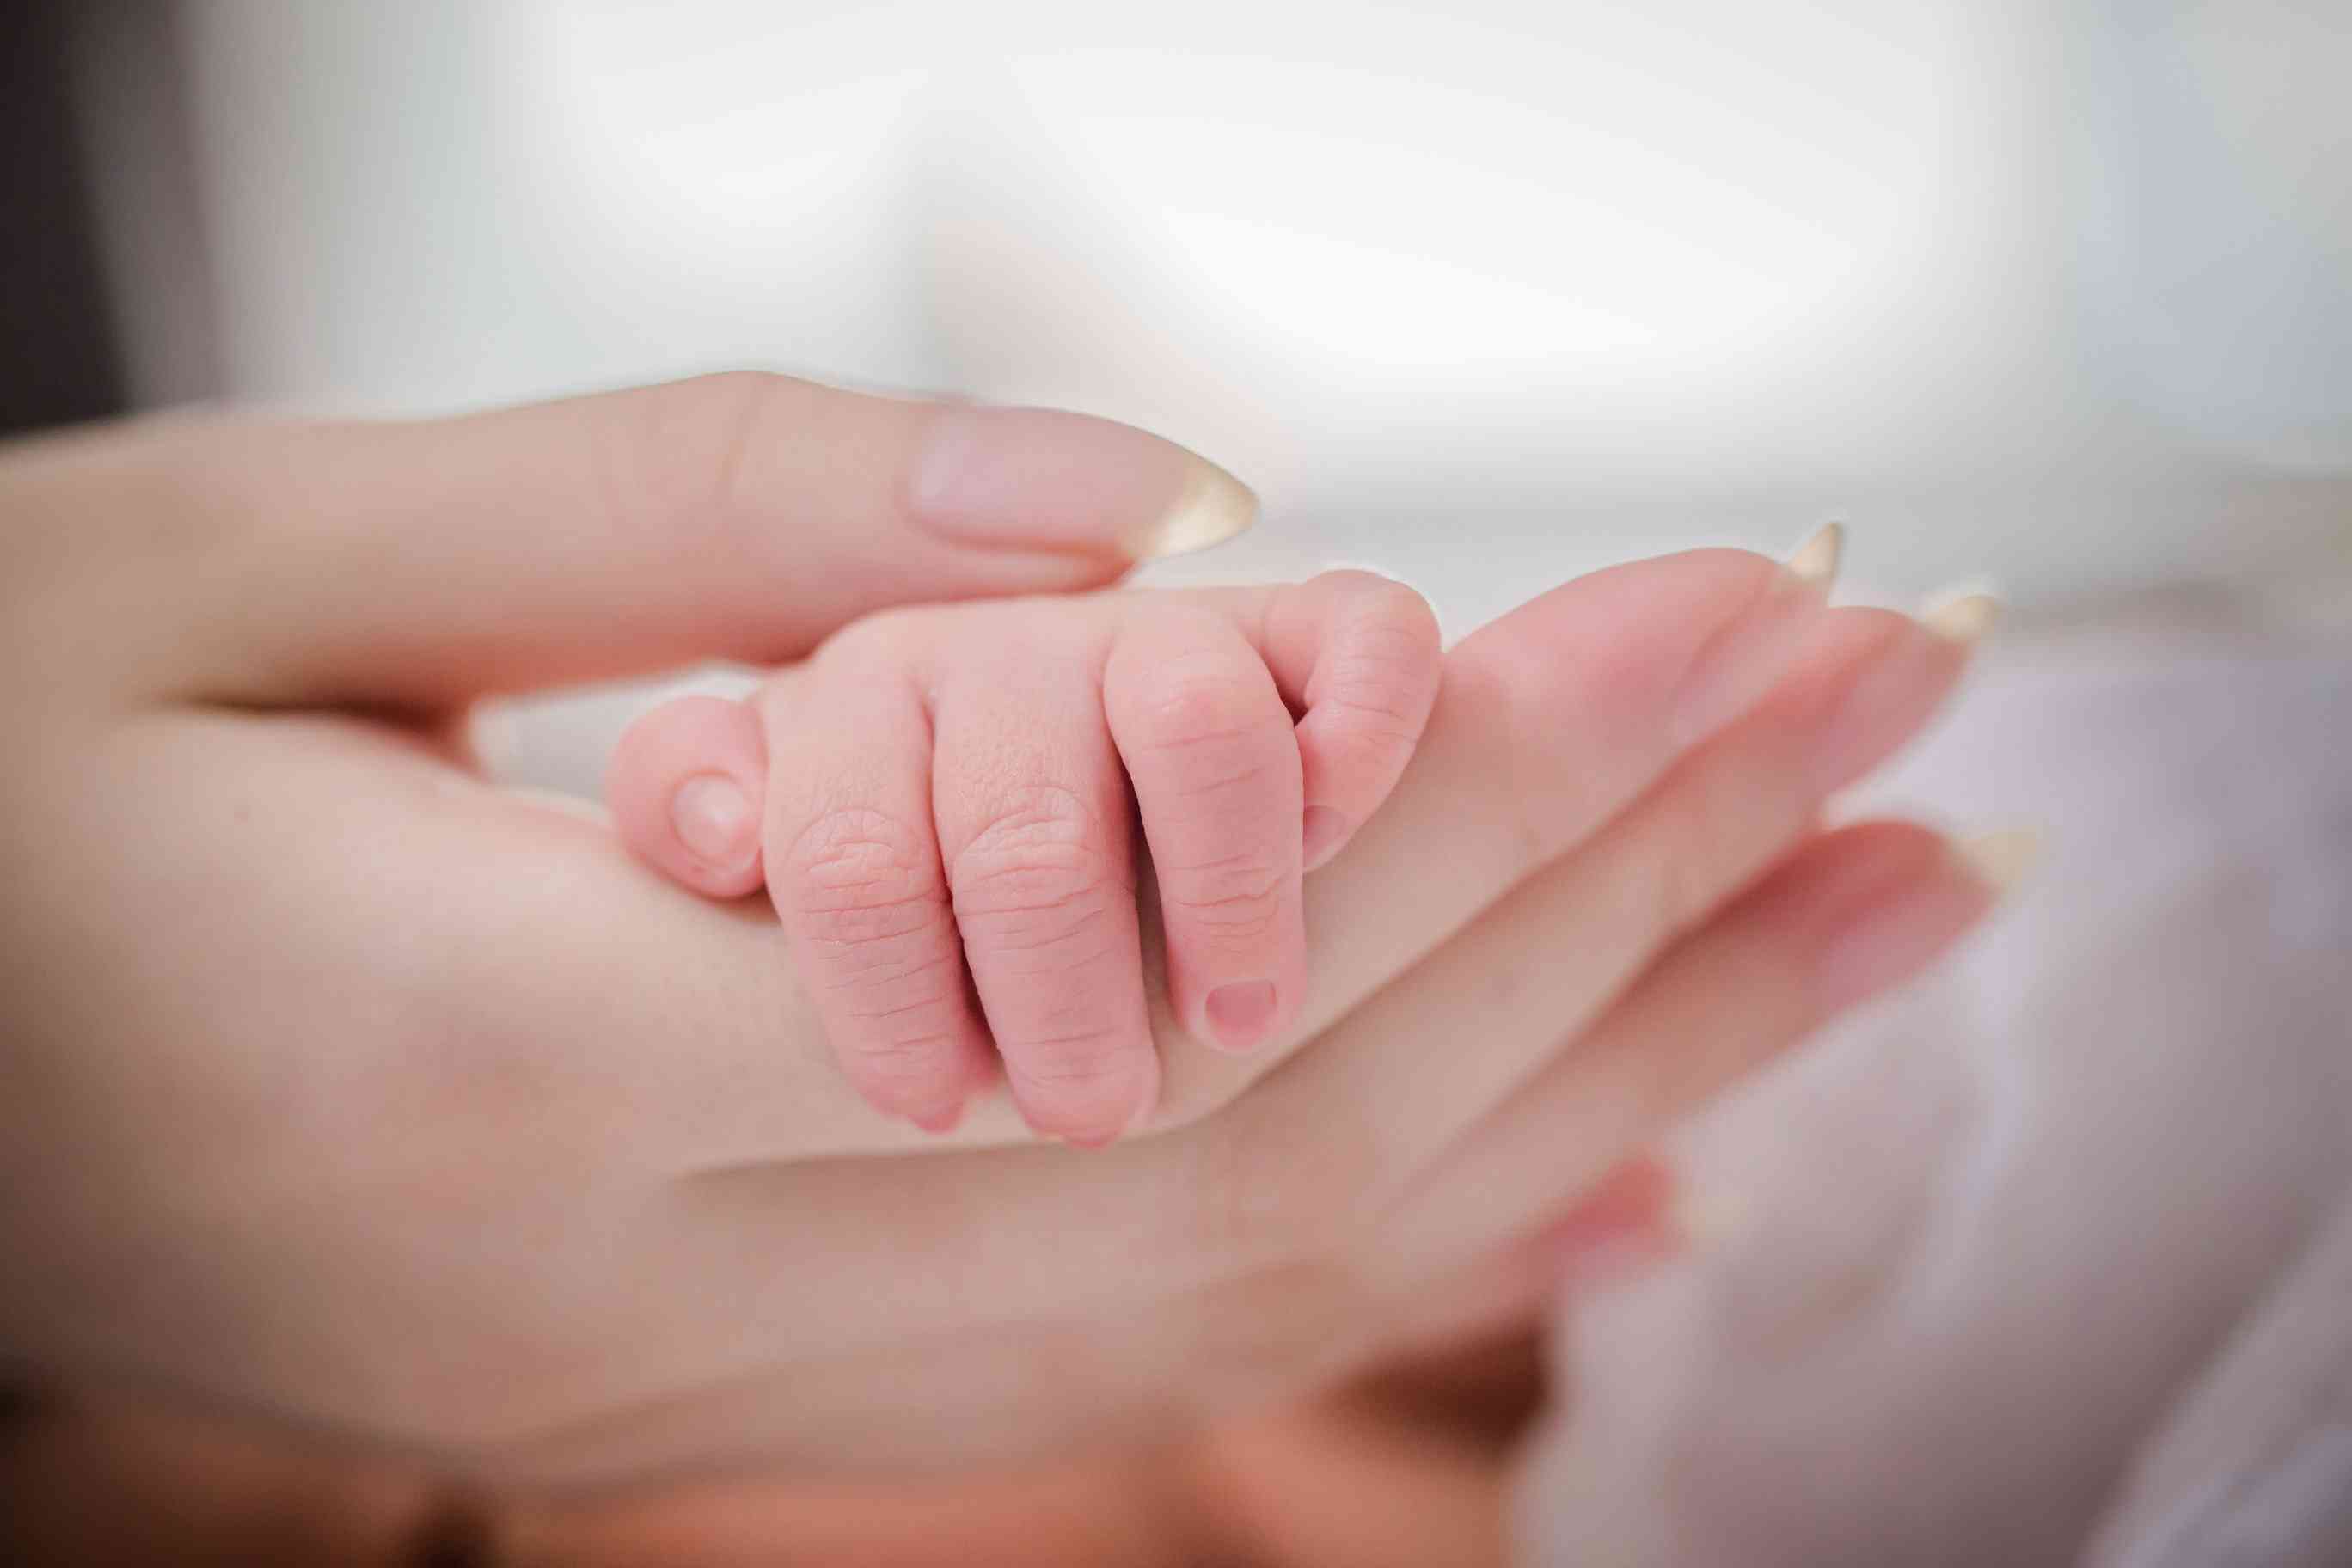 孕妇使用蚊香后可能影响胎宝宝大脑发育